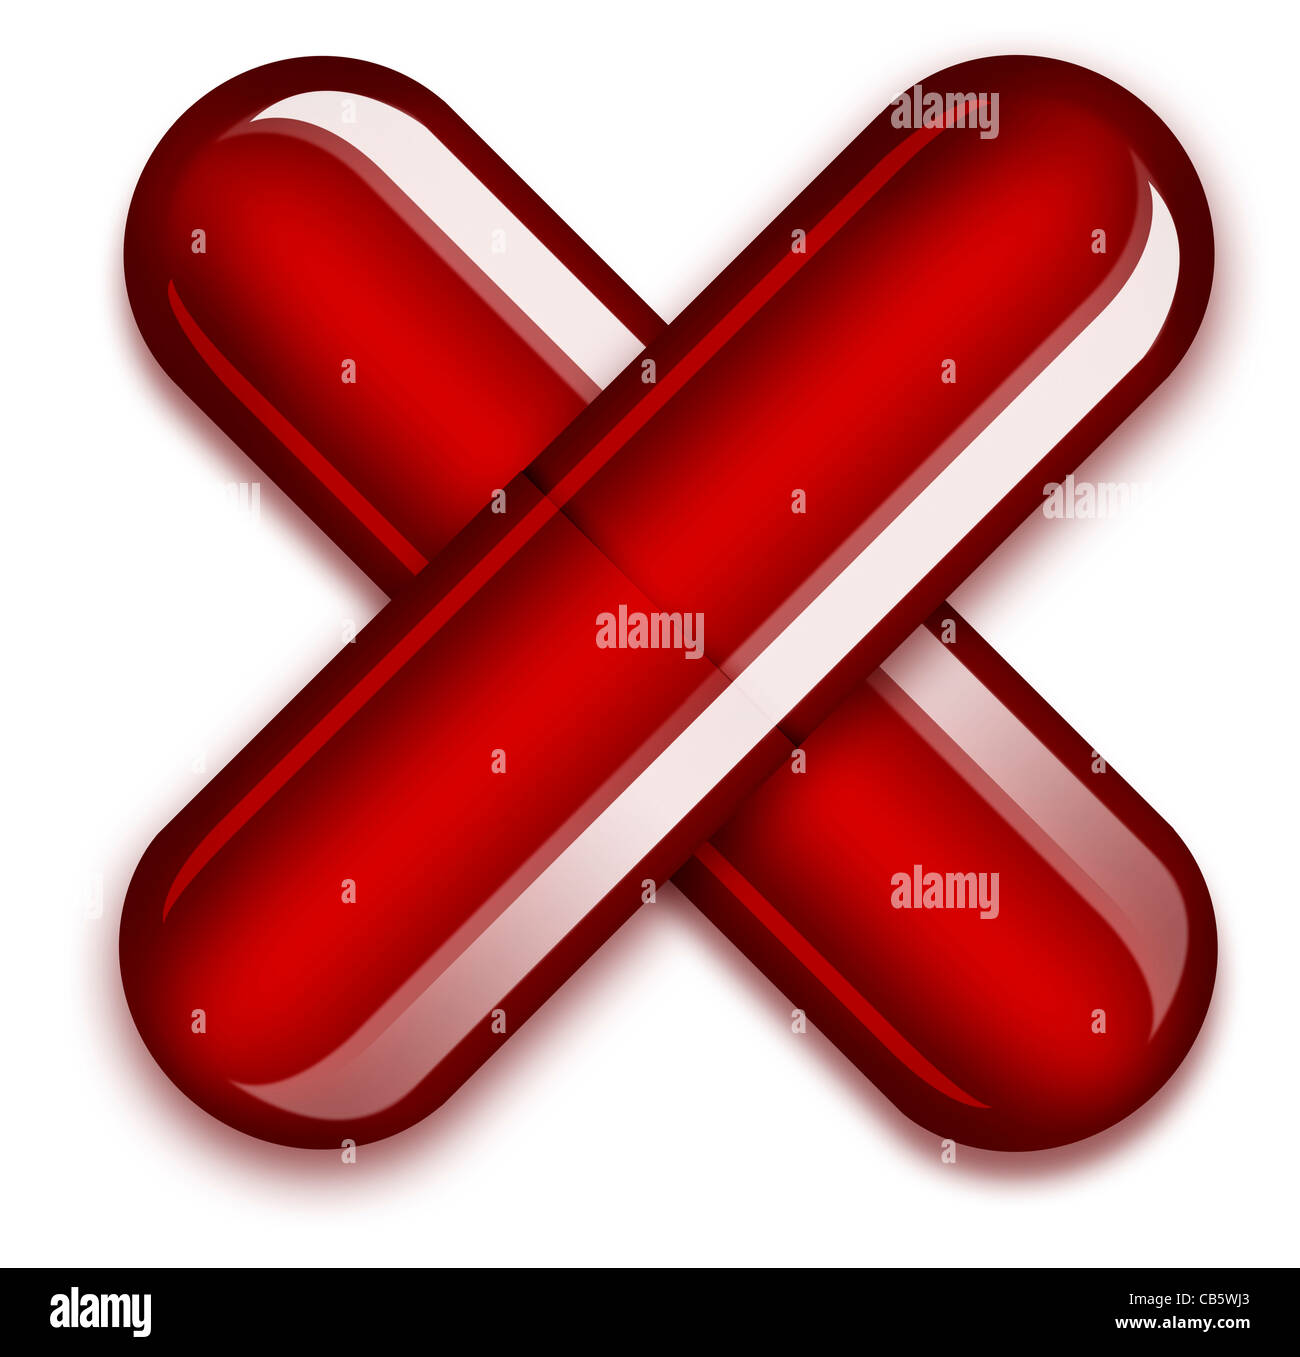 Coronavirus Covid-19-Konzept. Abbildung: Zwei rote Kapseln, die ein X bilden, um die Gefahren von Drogen und Drogensucht anzuzeigen Stockfoto